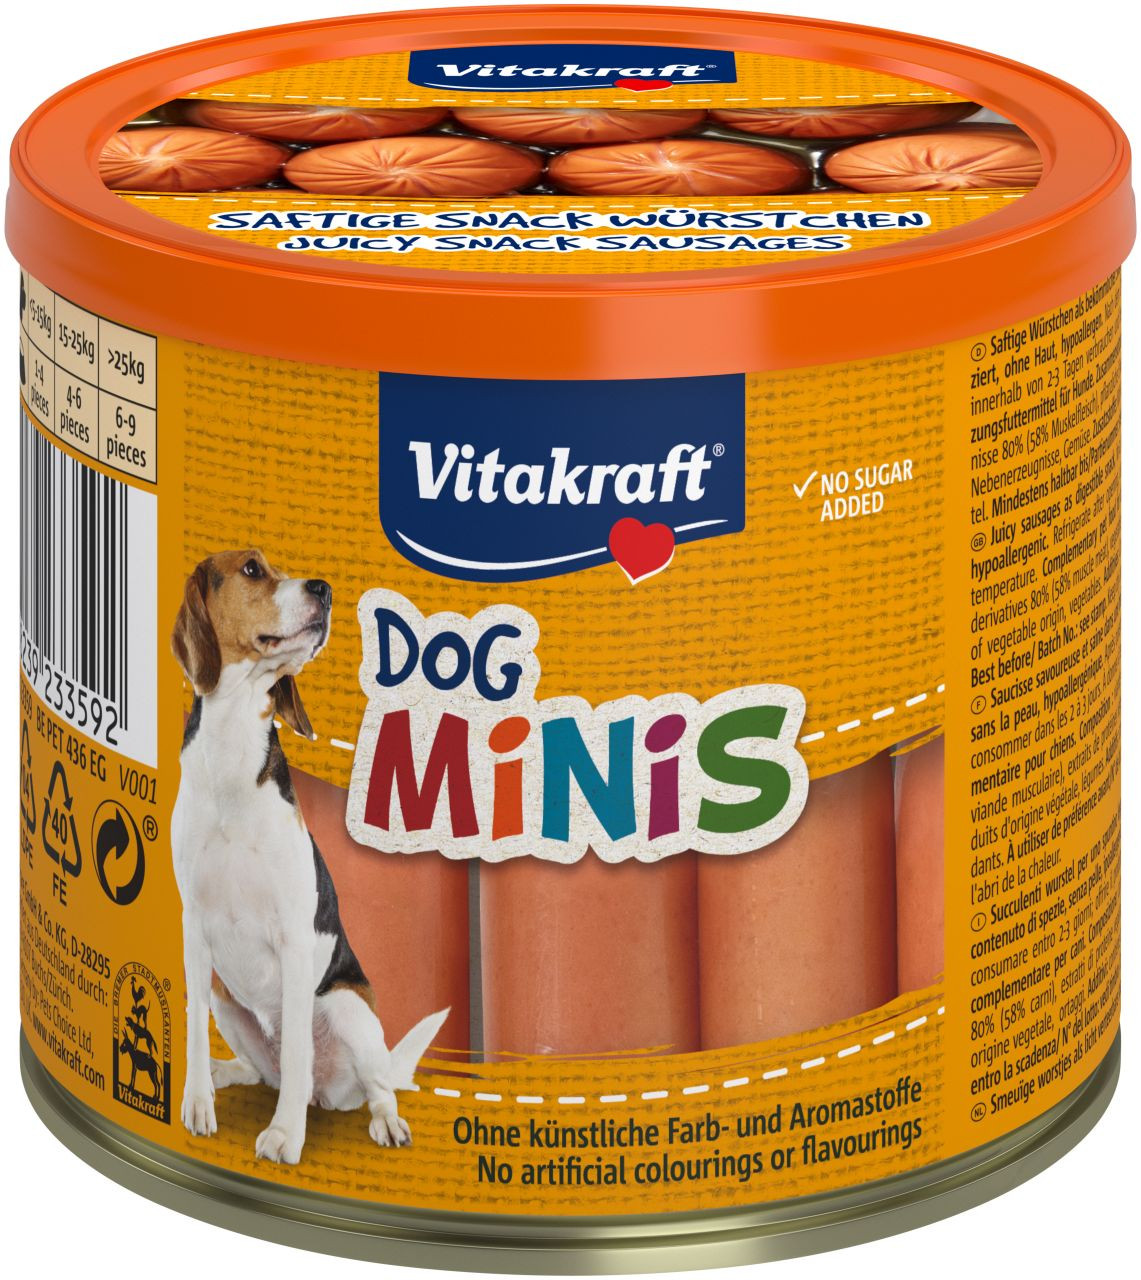 Vitakraft Dog Minis snackworstjes voor de hond (120 g)